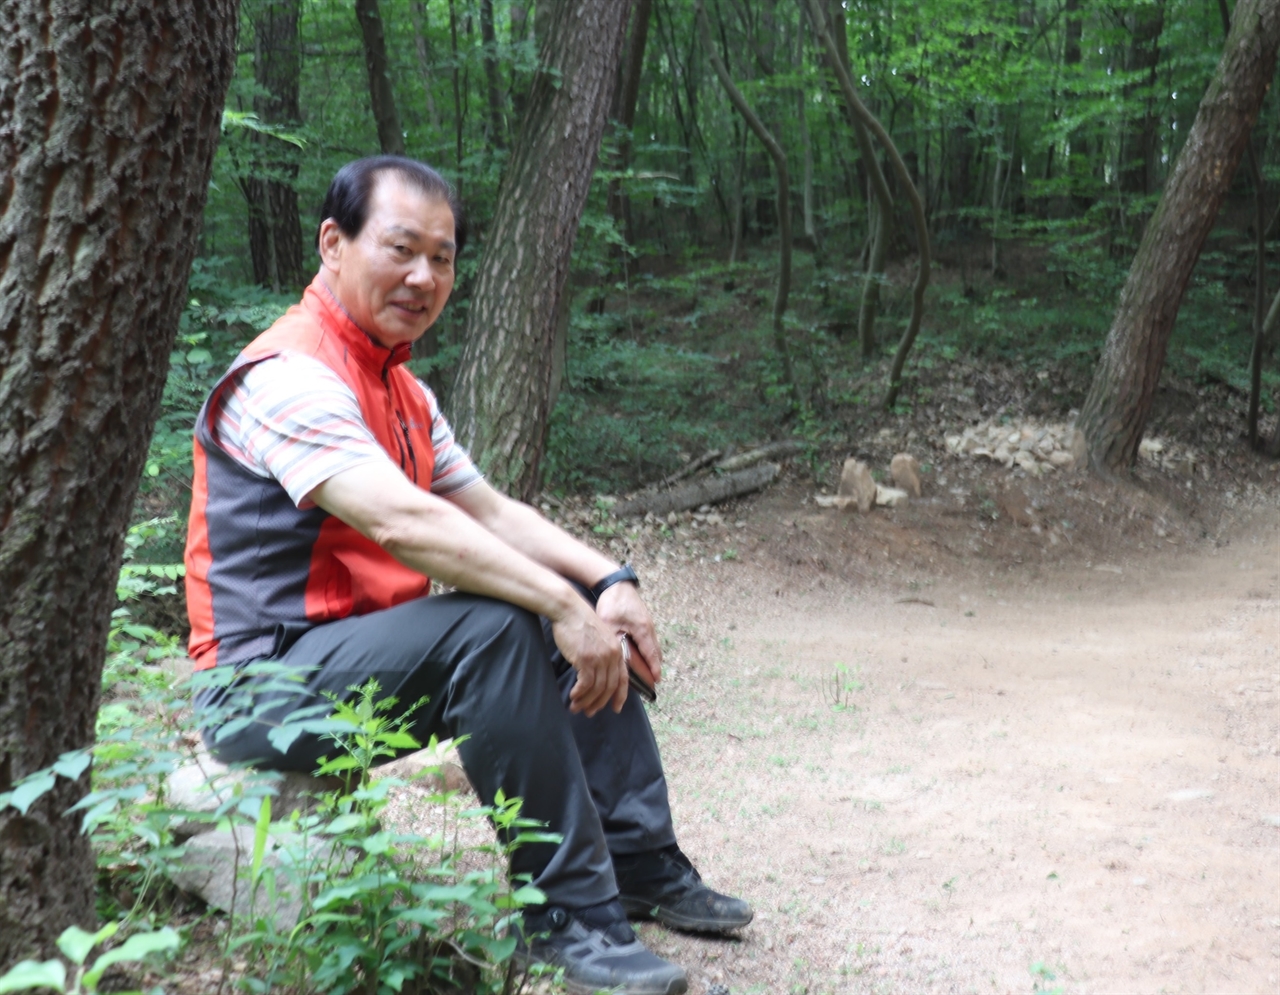 김석진씨에게 산책로를 정비한 이유를 물었다. 그는 "운동 삼아 한 일이고 재능기부"라고 답했다.